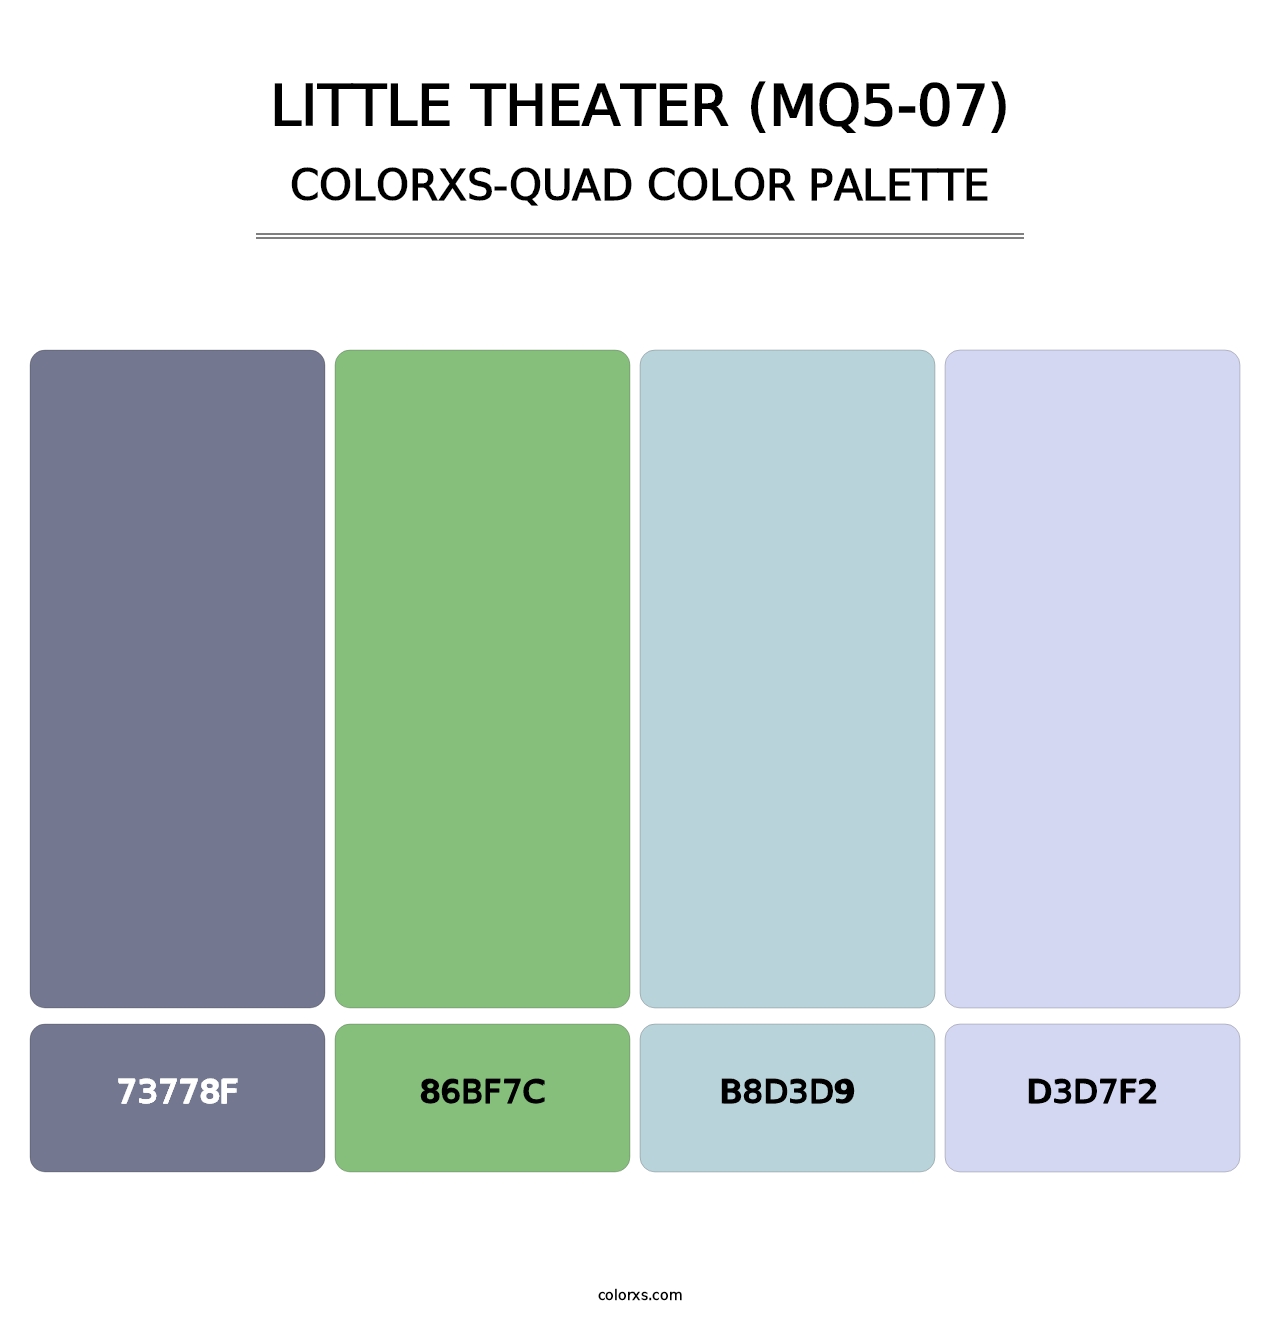 Little Theater (MQ5-07) - Colorxs Quad Palette